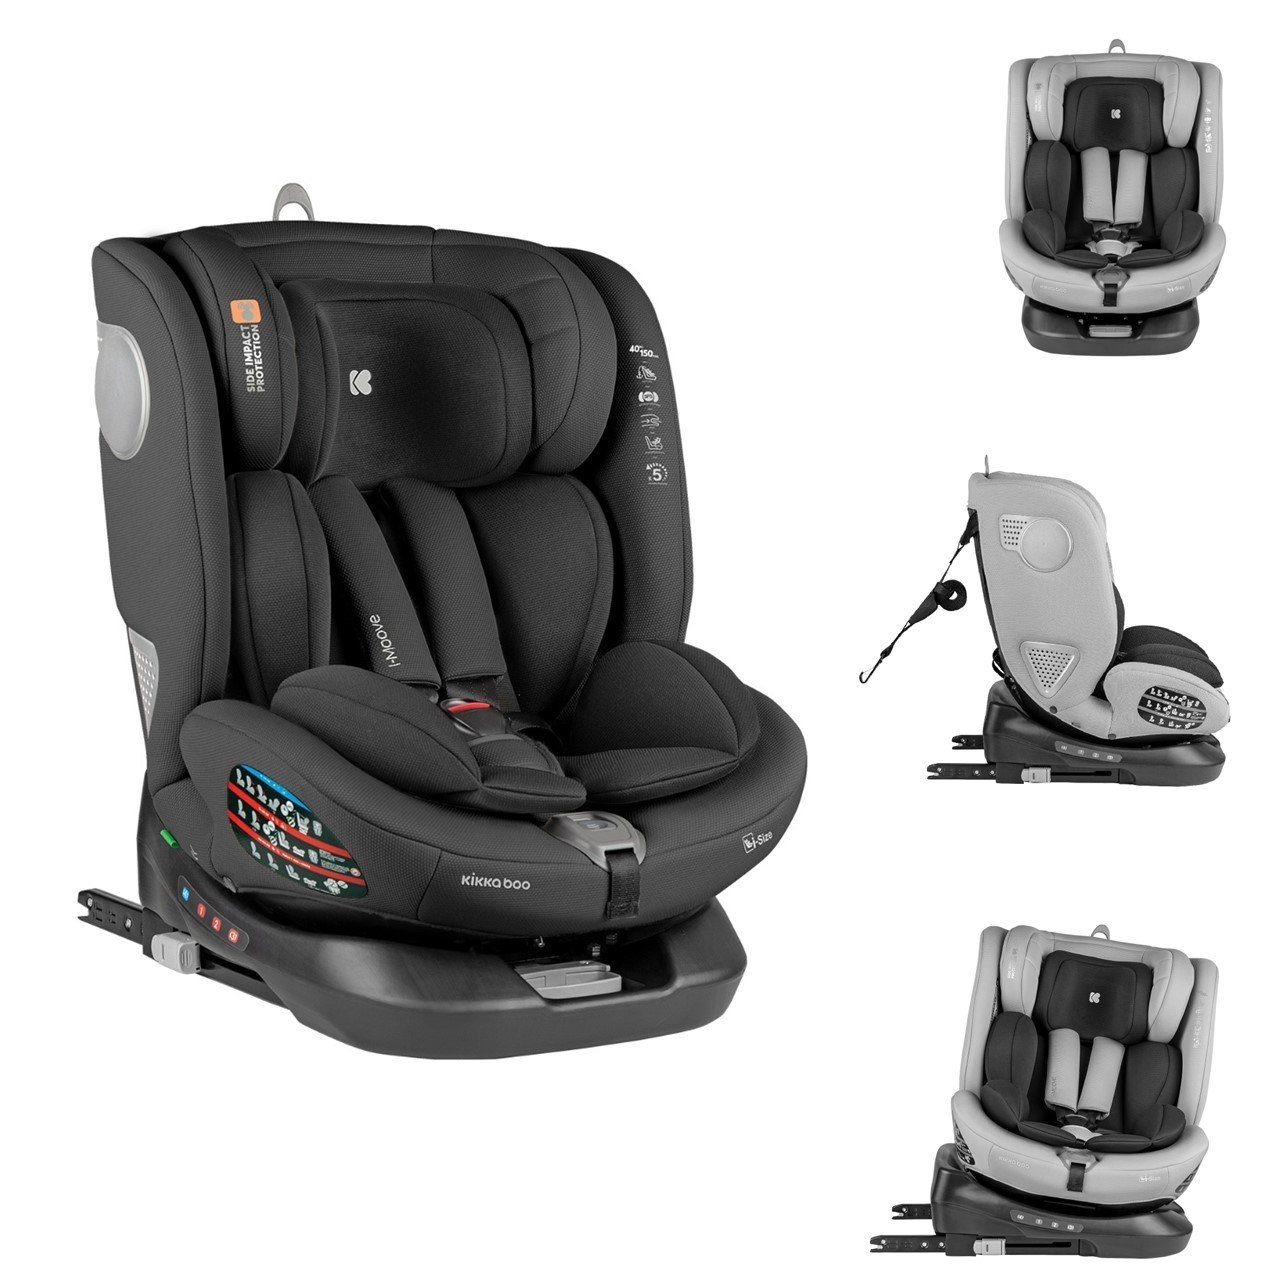 Kindersitz Flame360 i-Size